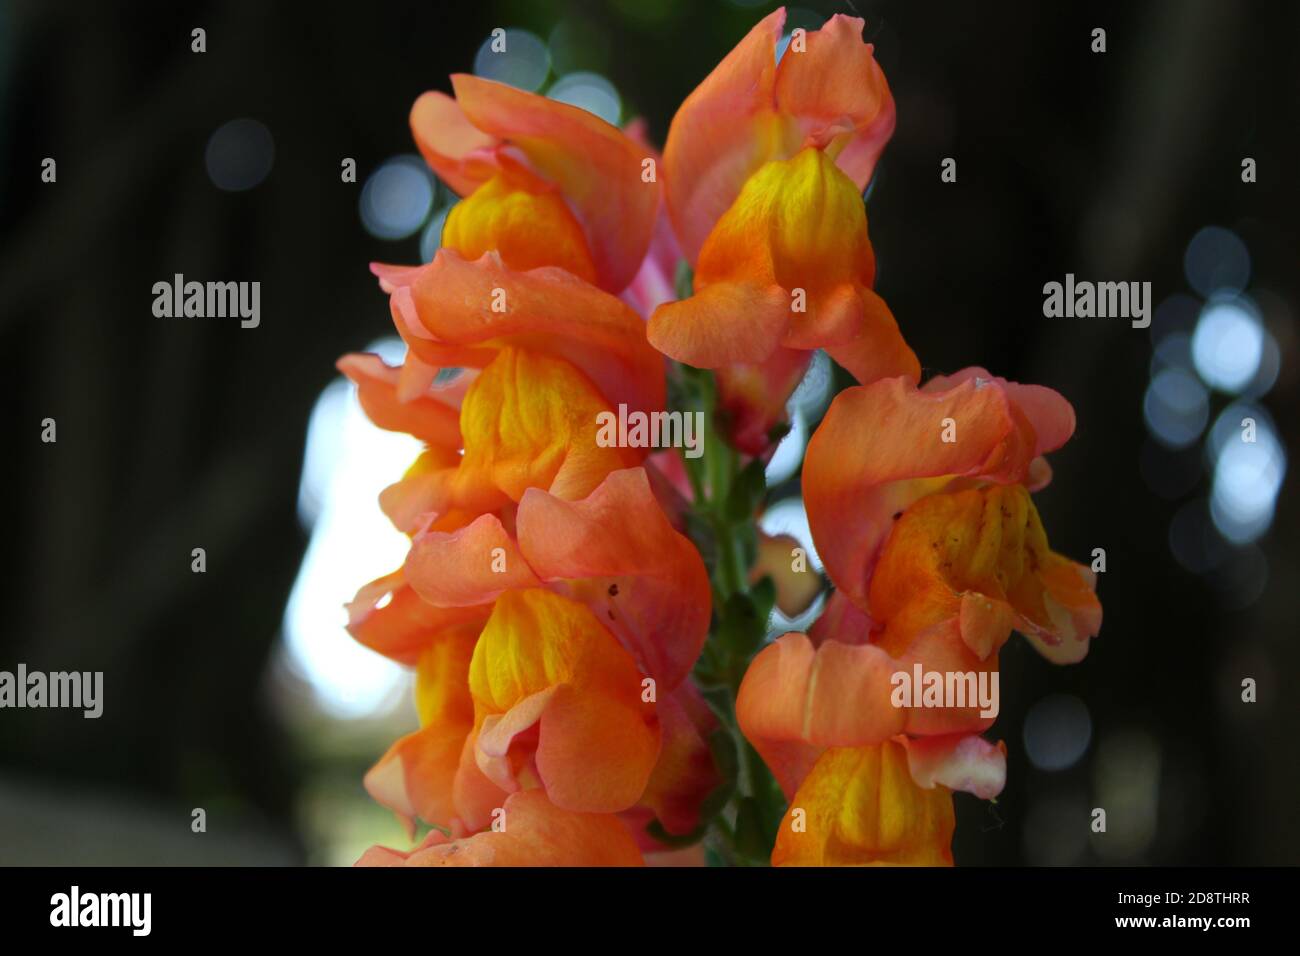 Schöne rosa-orange snapdragon / Löwenmaul Blume im Garten, Nahaufnahme mit verschwommenem Hintergrund. Stockfoto